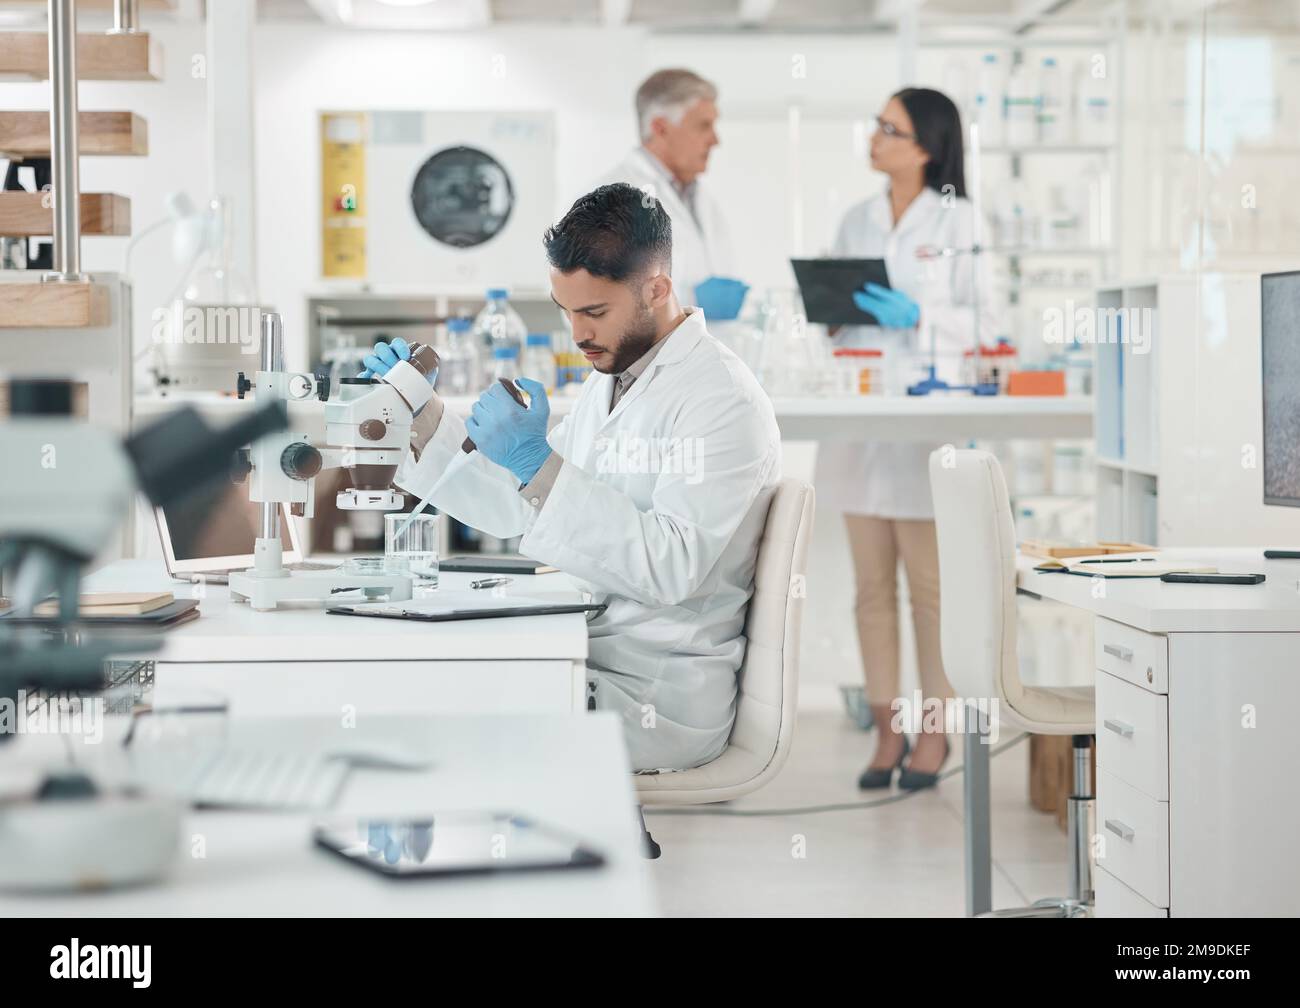 Maintenant pour observer ce qui se passe ensuite. un jeune scientifique travaillant avec des échantillons dans un laboratoire. Banque D'Images